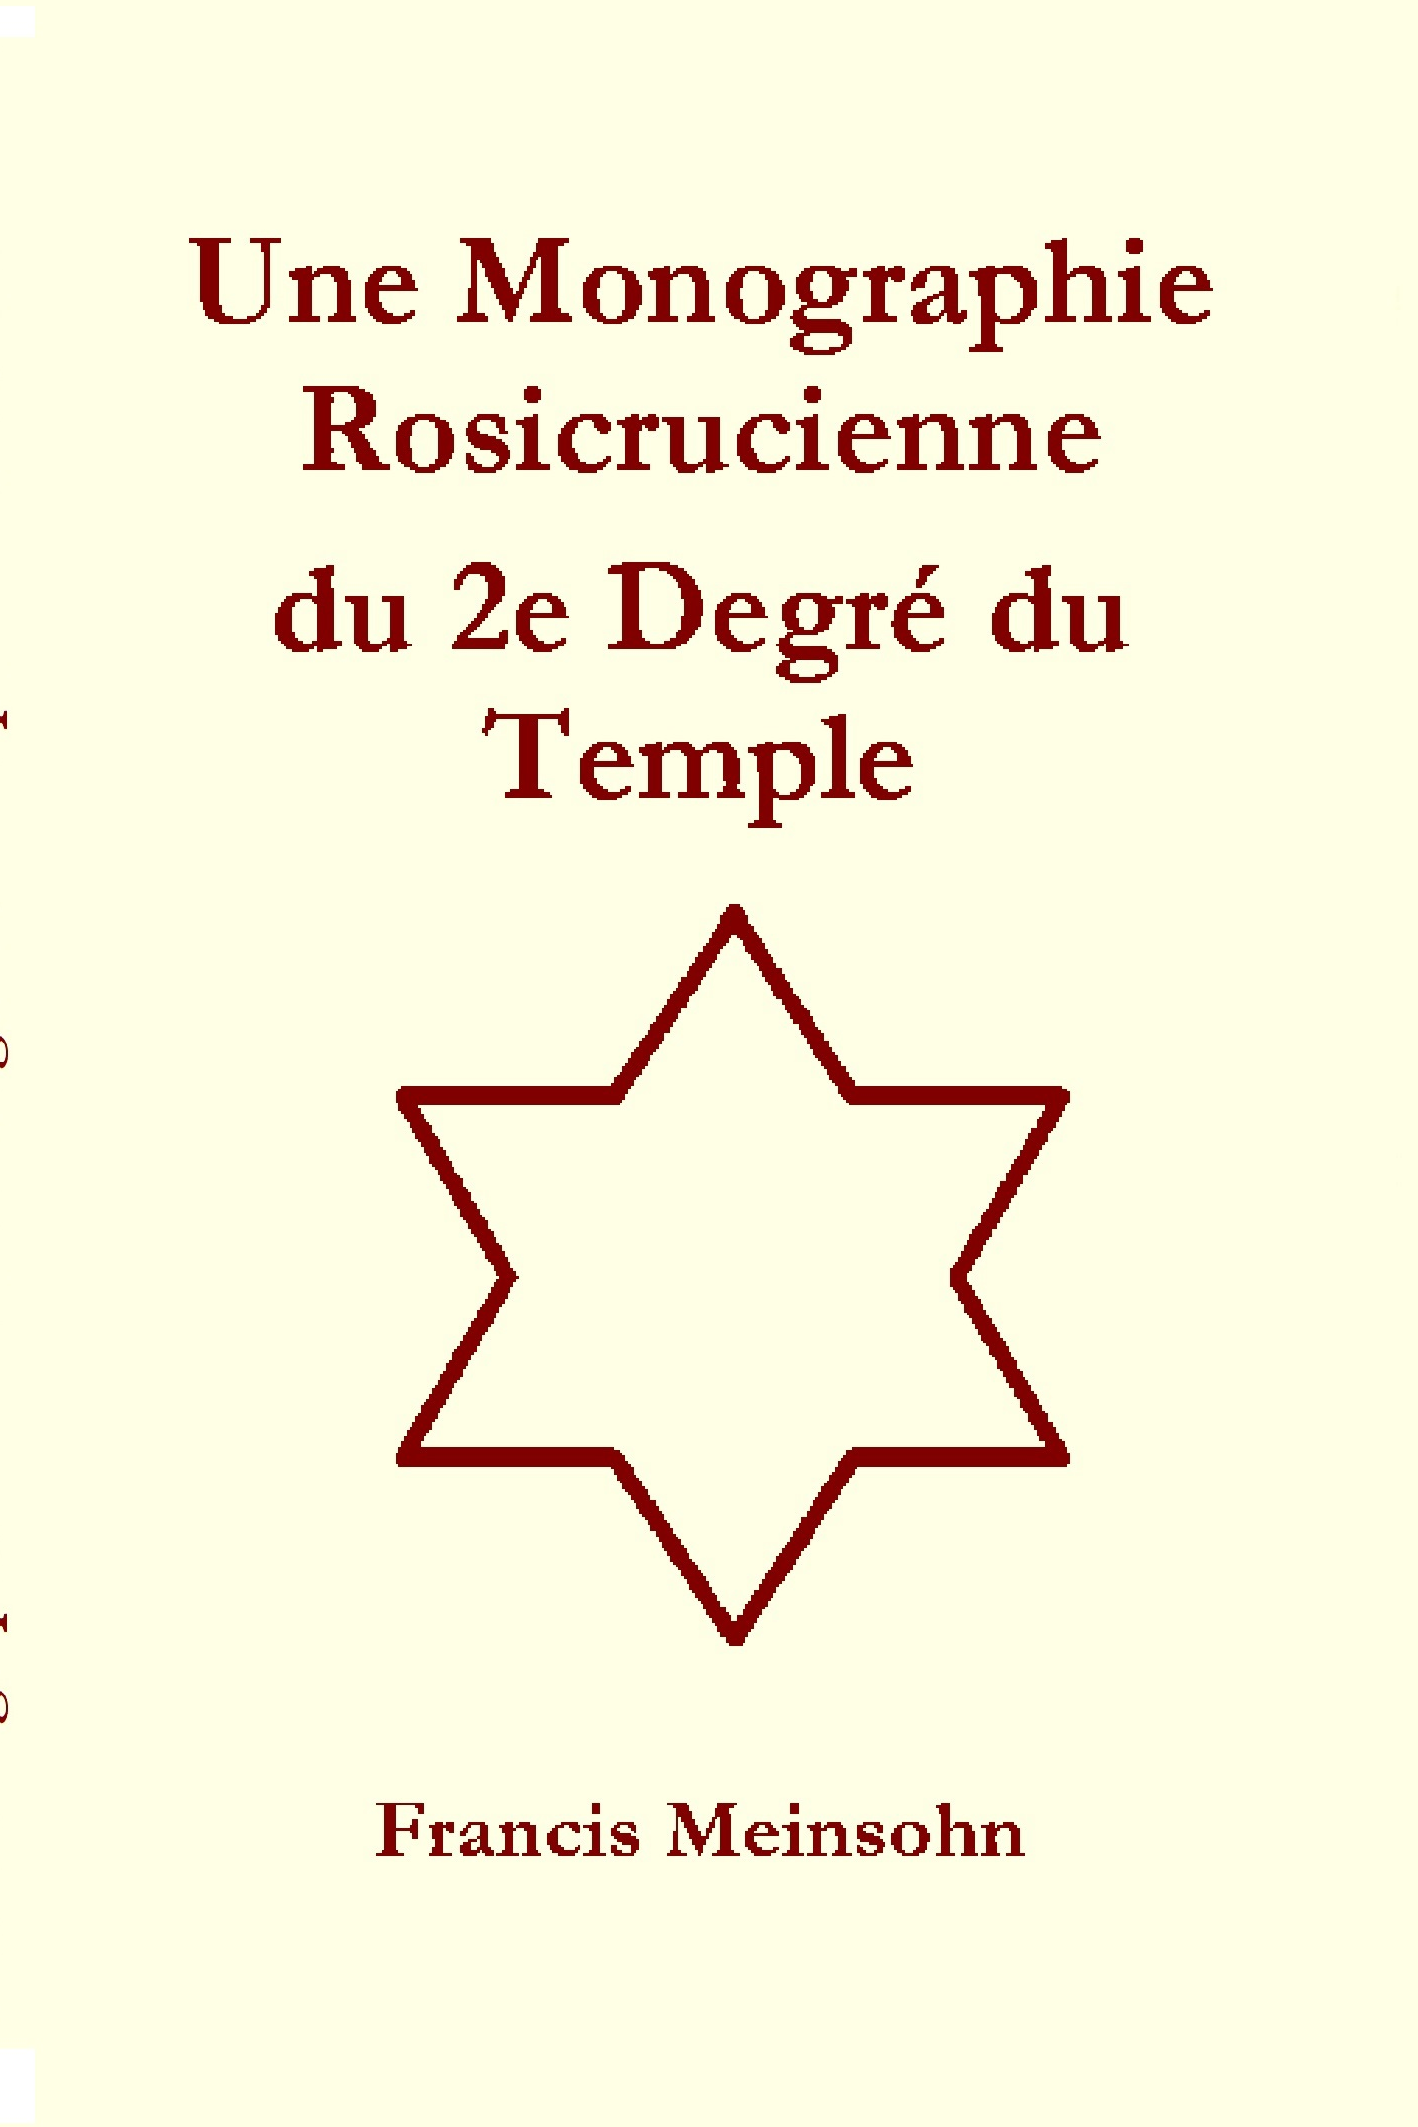 Monographie R+C du 2e Degré du Temple